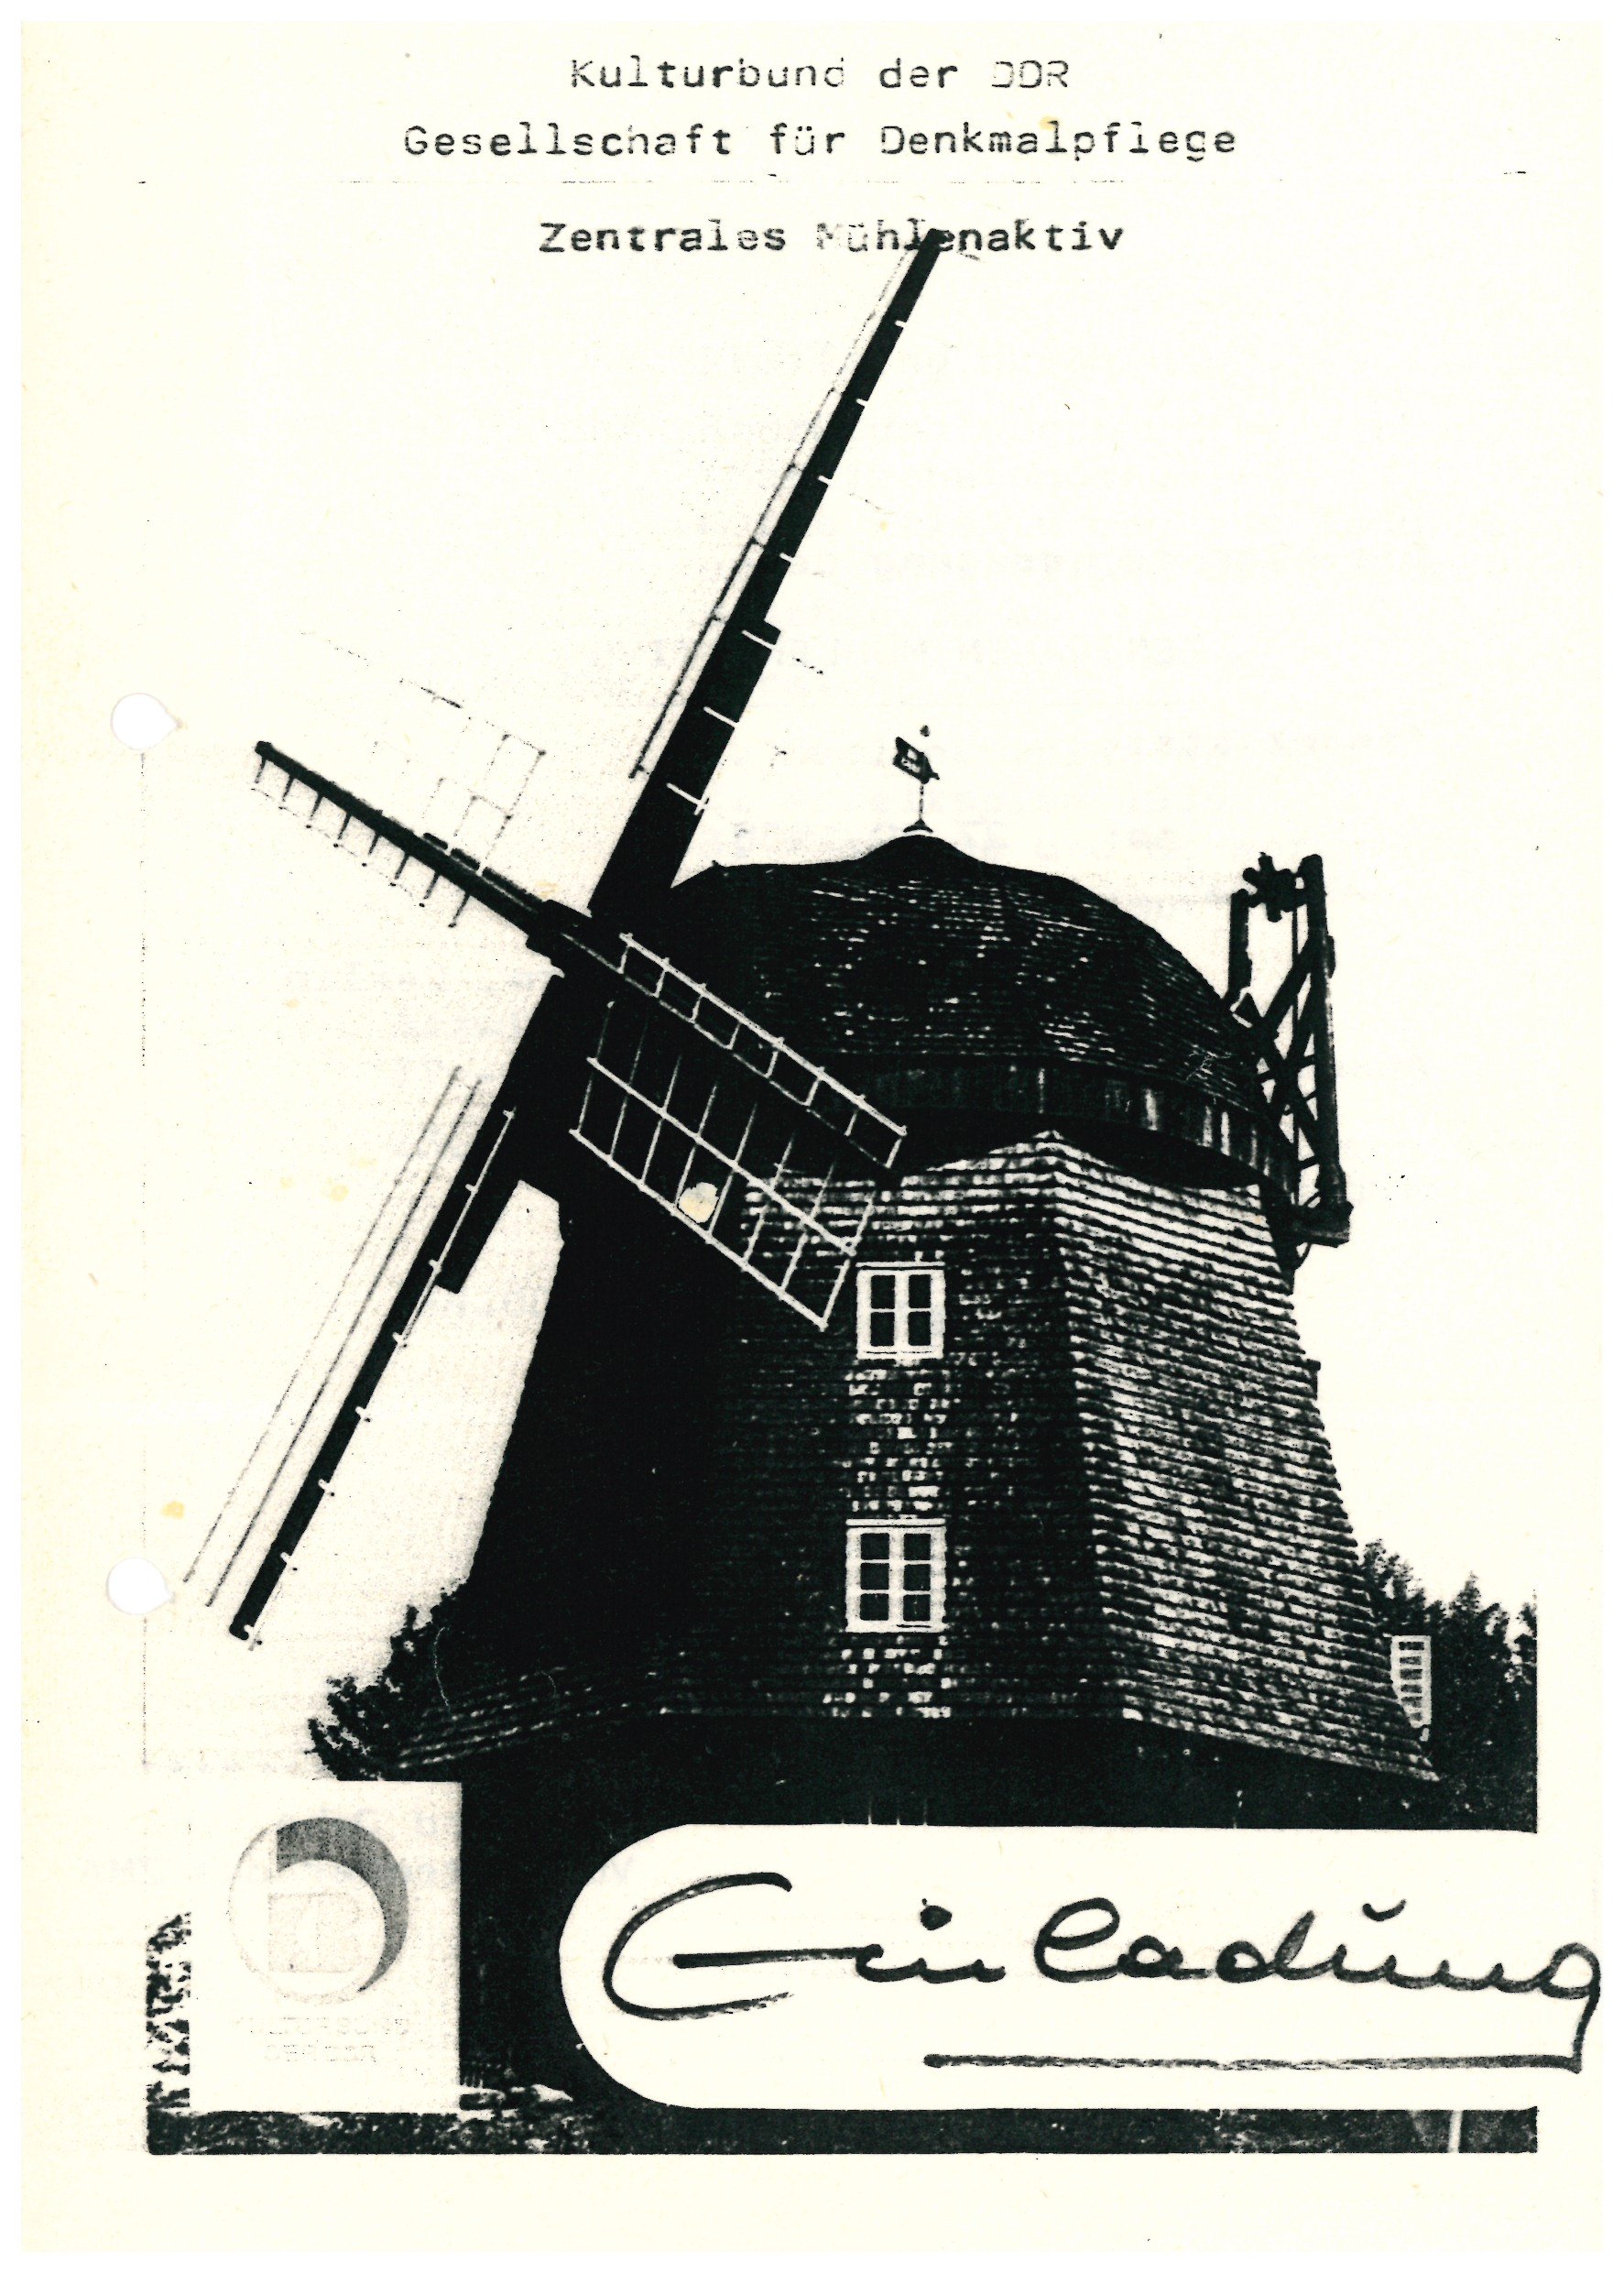 Einladung Zentrales Mühlenaktiv 1988 (Historische Mühle von Sanssouci CC BY-NC-SA)